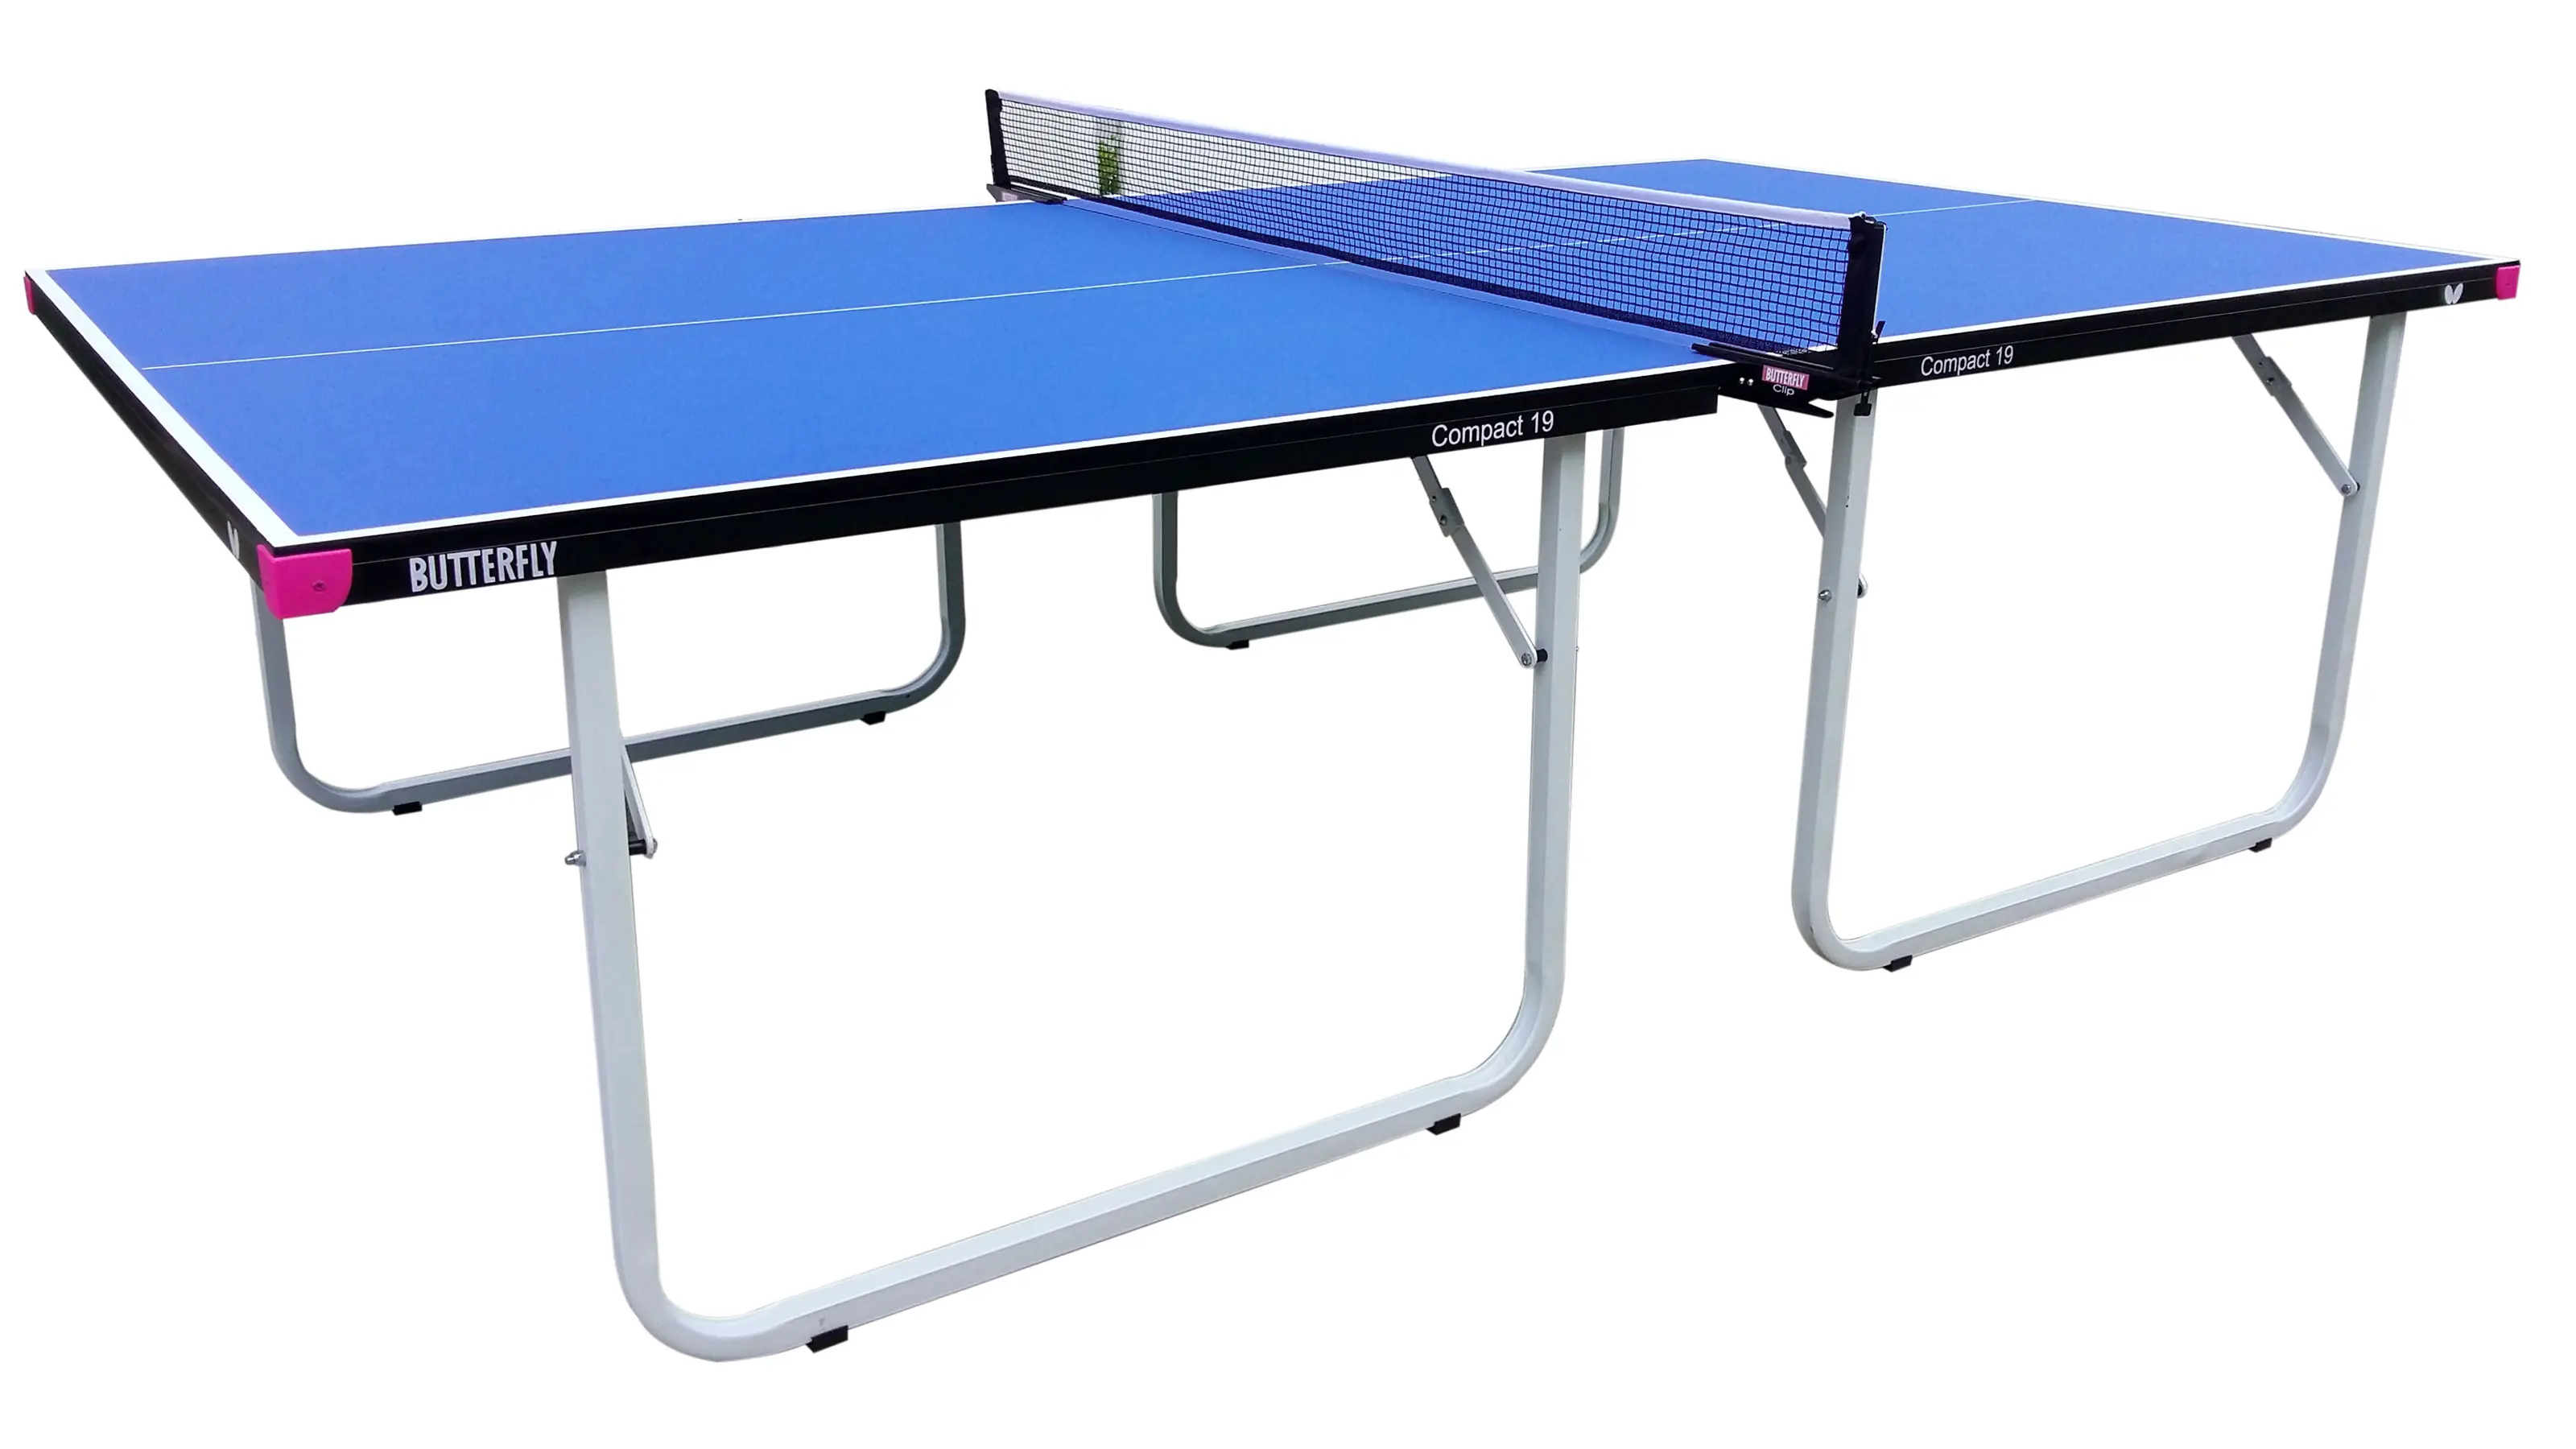 Старлайн теннисные столы. STARLINE Compact LX теннисный стол. Butterfly стол для тенниса. Изогнутый стол для пинг понга. Теннисные столы с антибликовым покрытием.